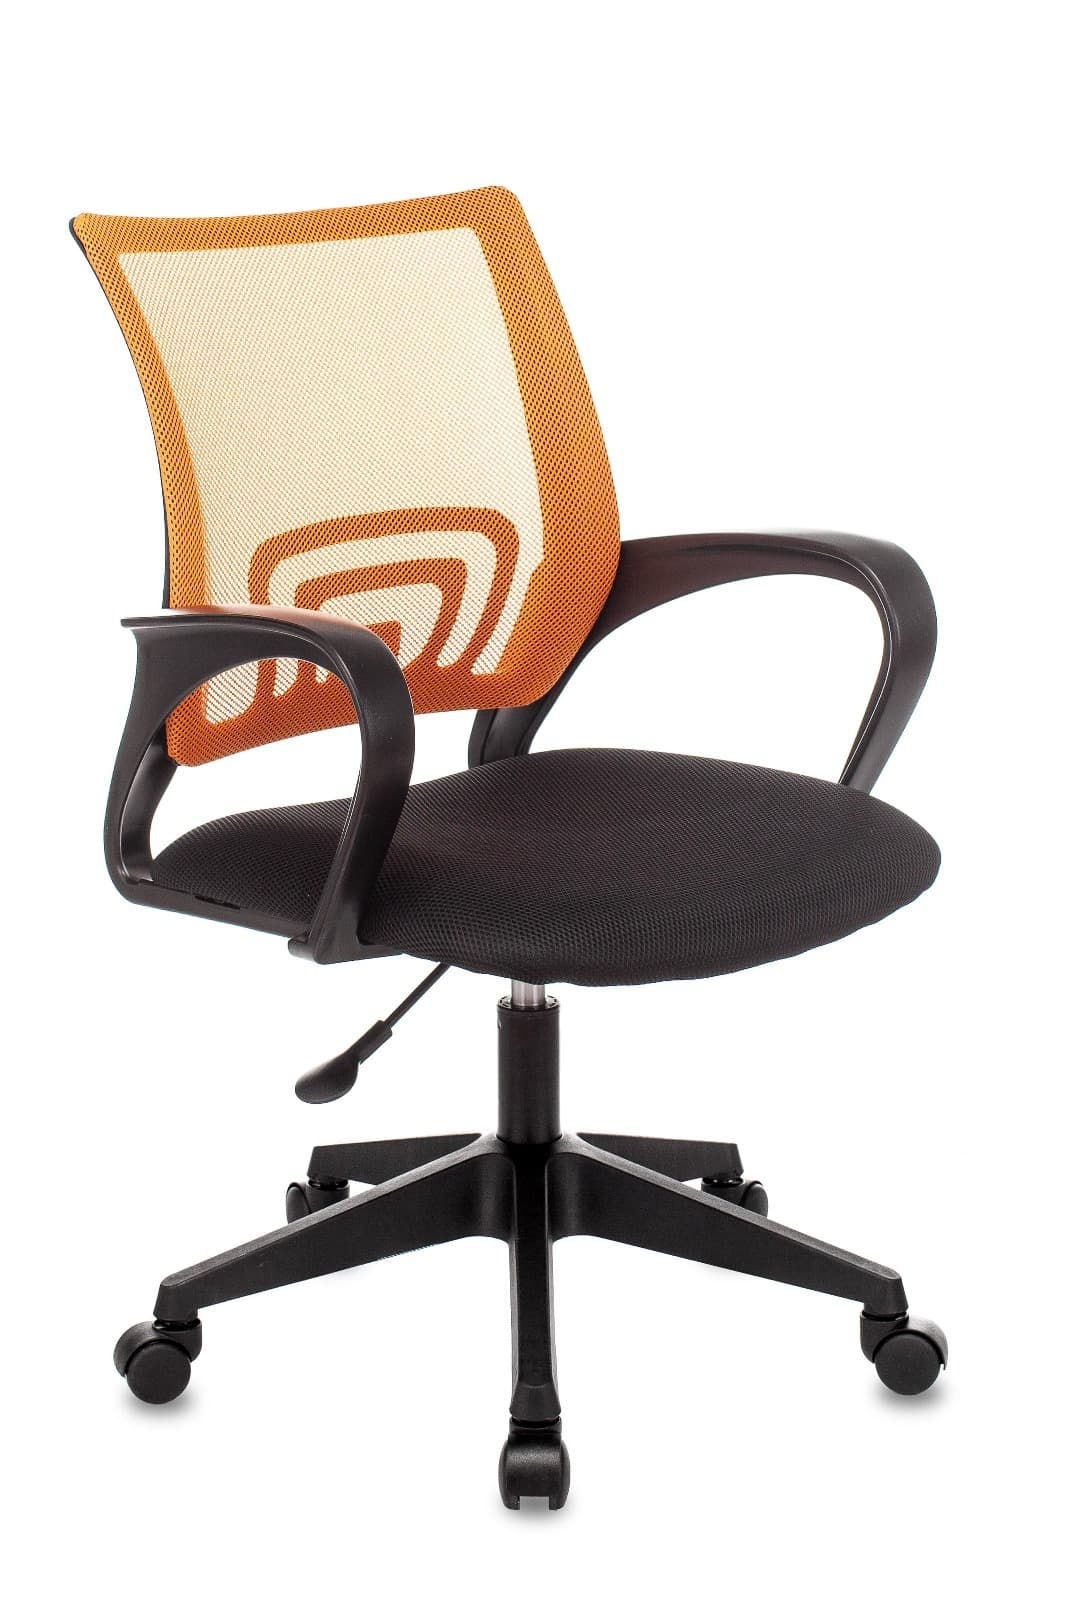 Компьютерное кресло ST-Basic офисное сетка/ткань оранжевый крестовина пластик механизм Пиастра